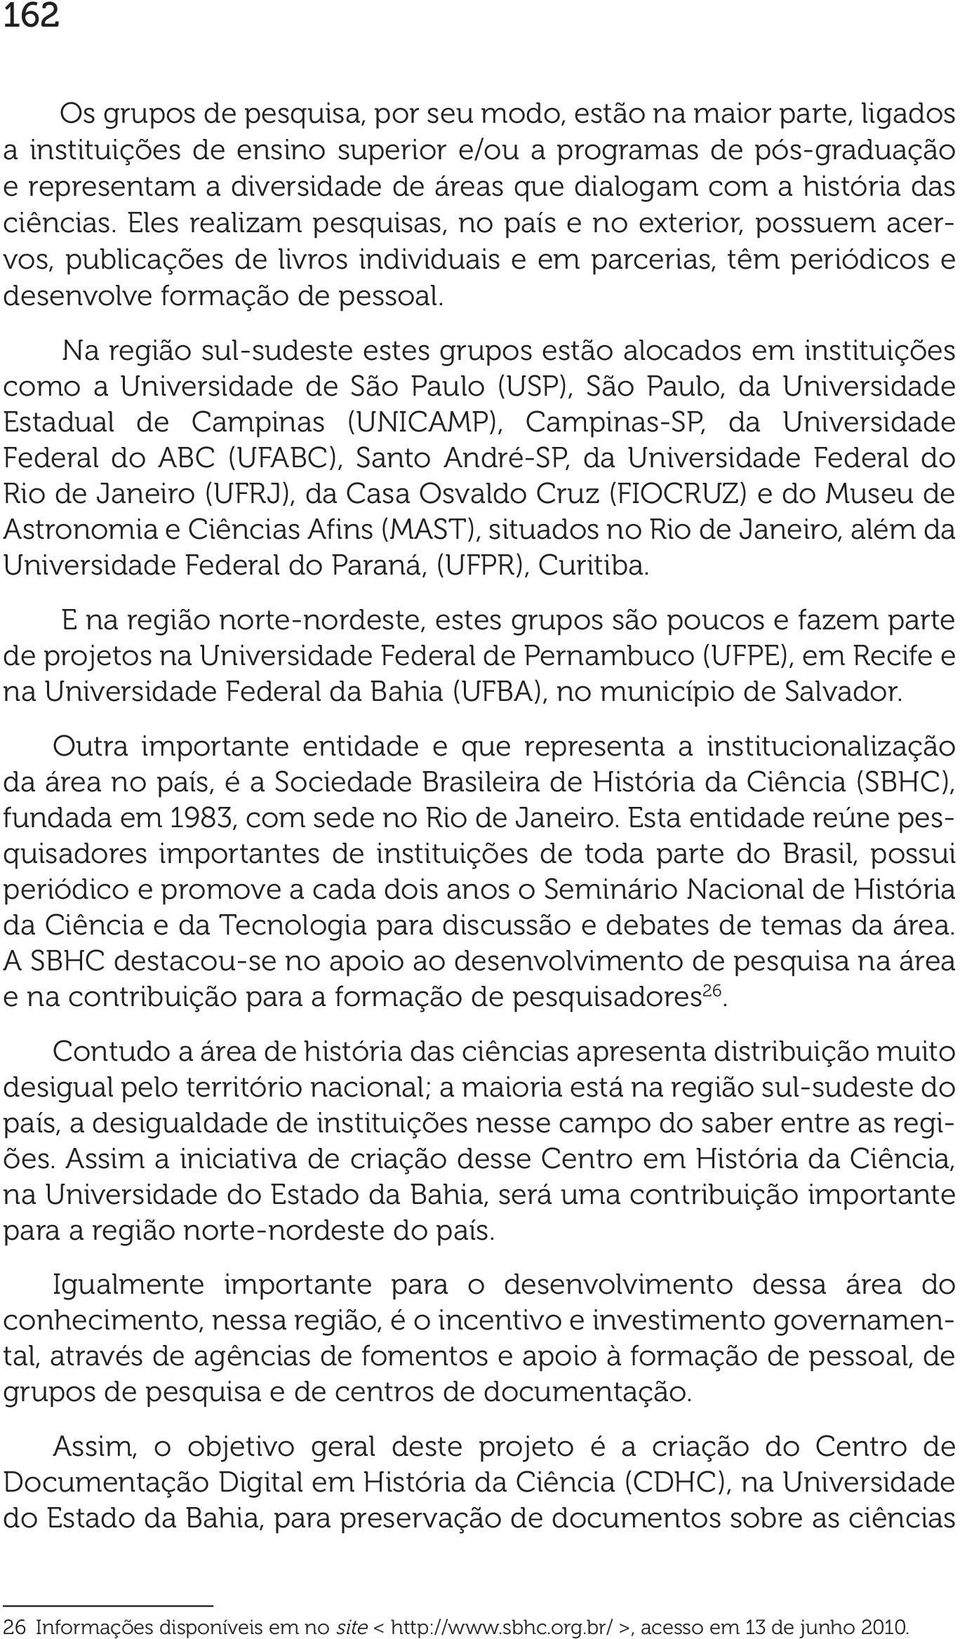 Na região sul-sudeste estes grupos estão alocados em instituições como a Universidade de São Paulo (USP), São Paulo, da Universidade Estadual de Campinas (UNICAMP), Campinas-SP, da Universidade